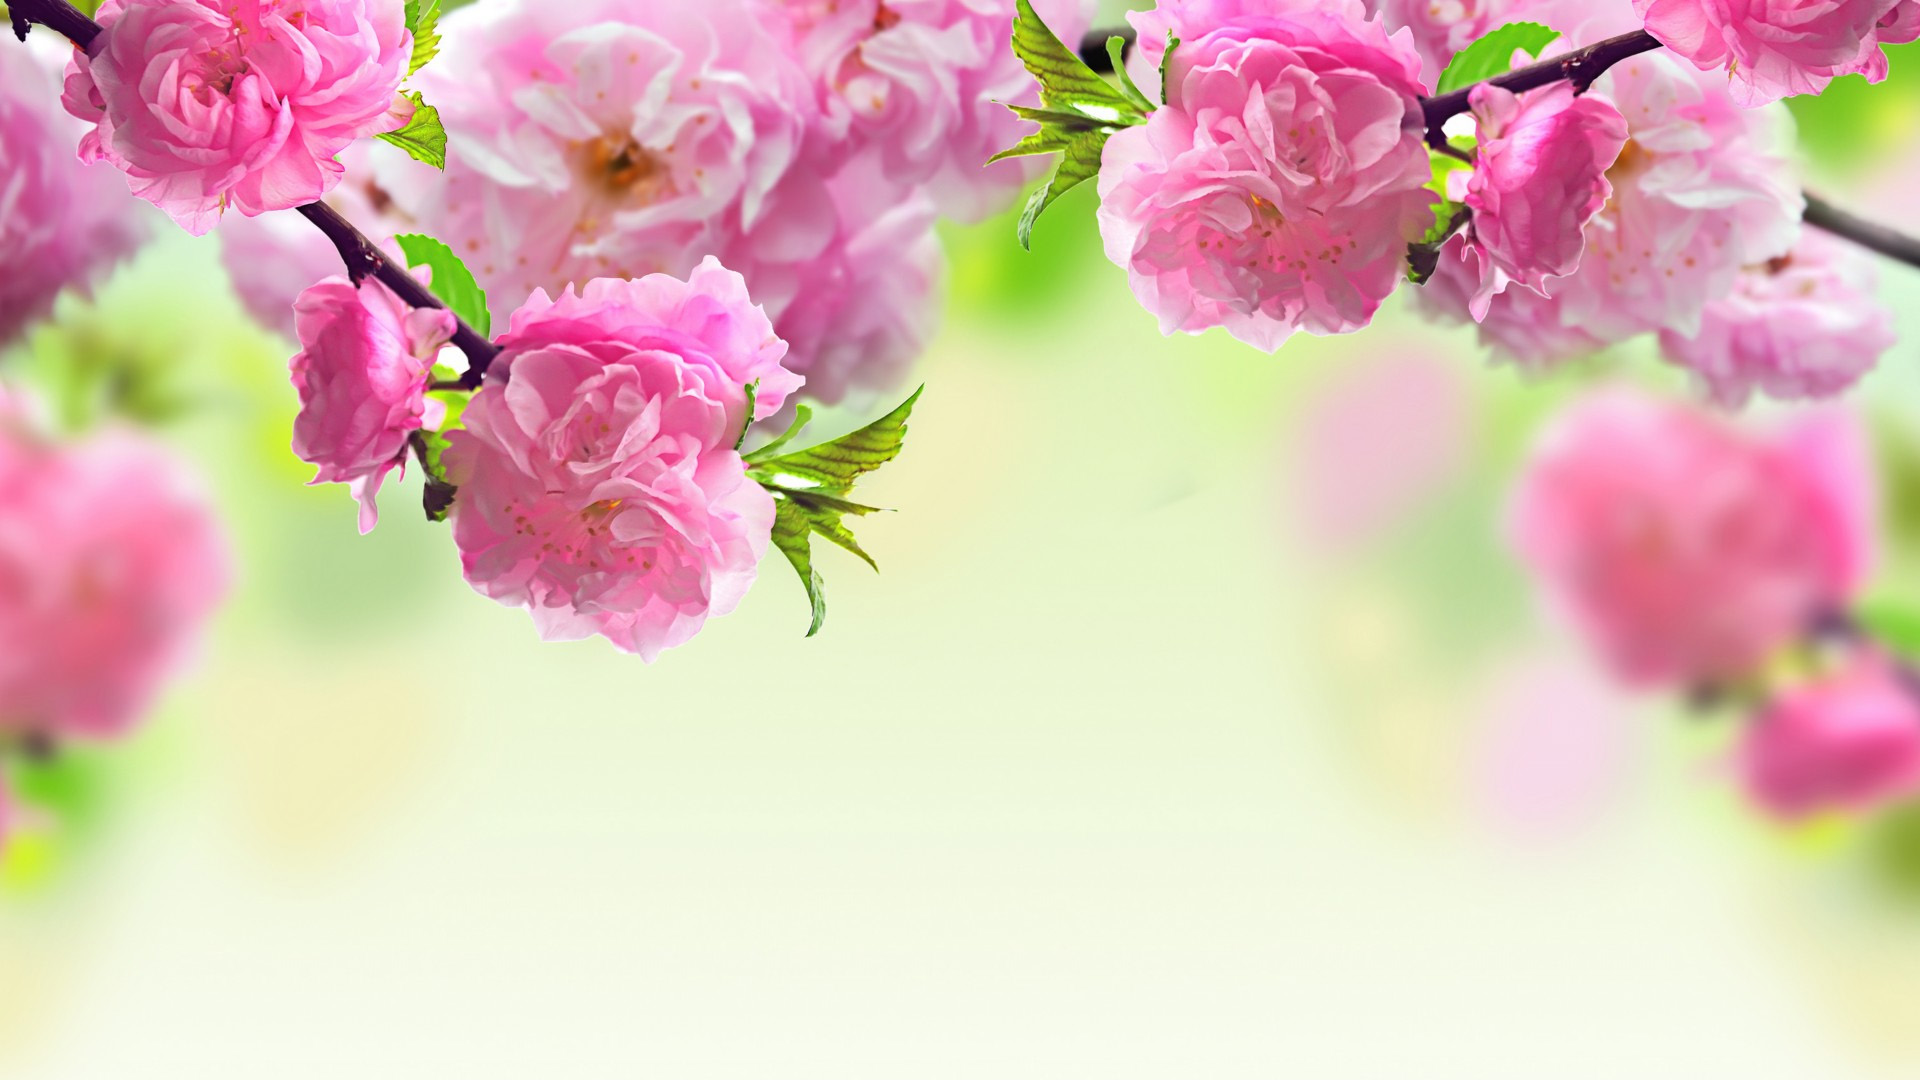 桃花树枝,桃花,粉红色,春天宽屏桌面壁纸